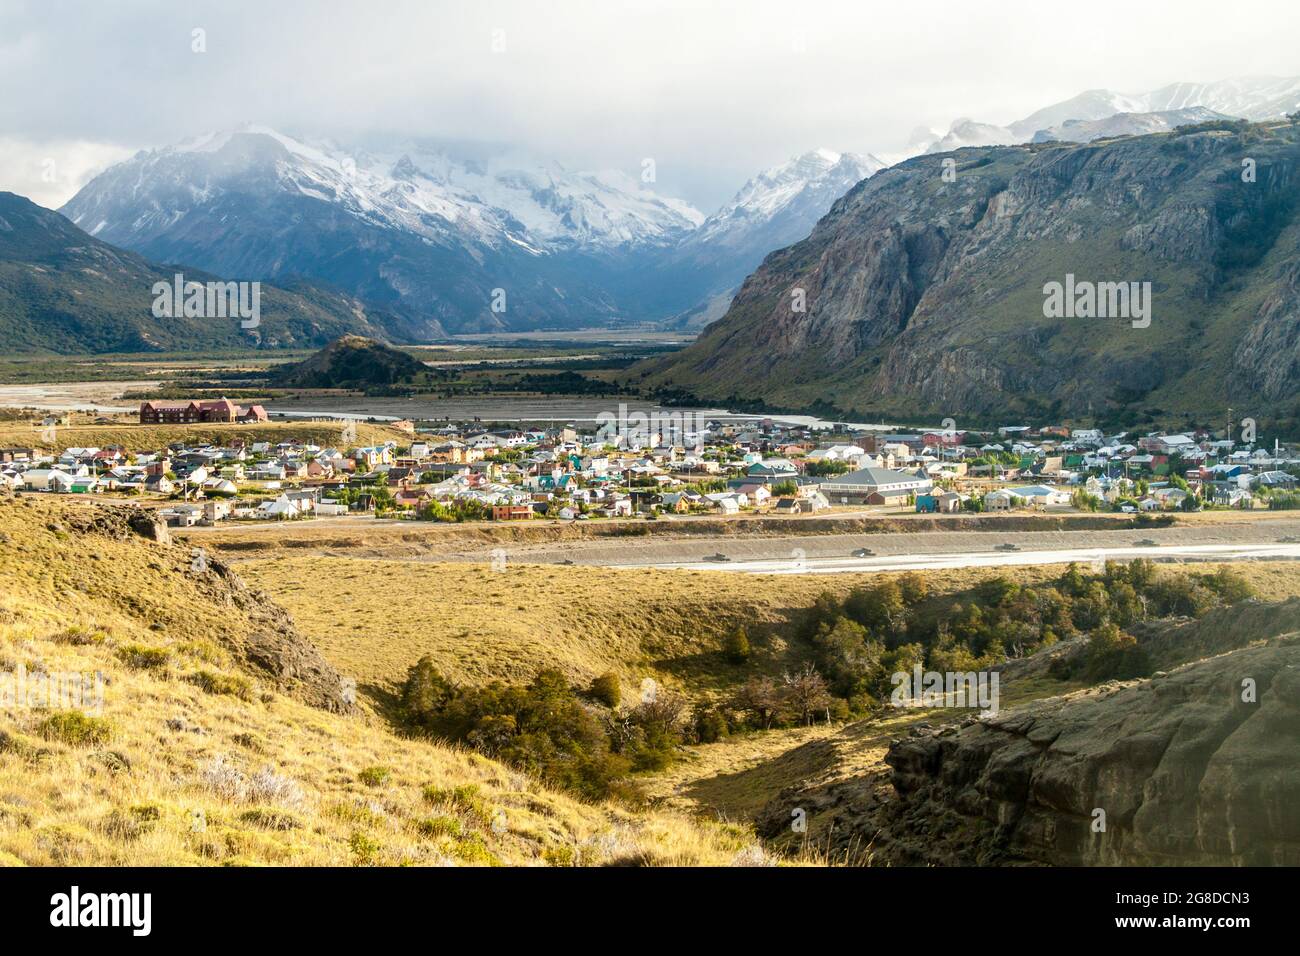 View of El Chalten village in National Park Los Glaciares, Argetina Stock Photo